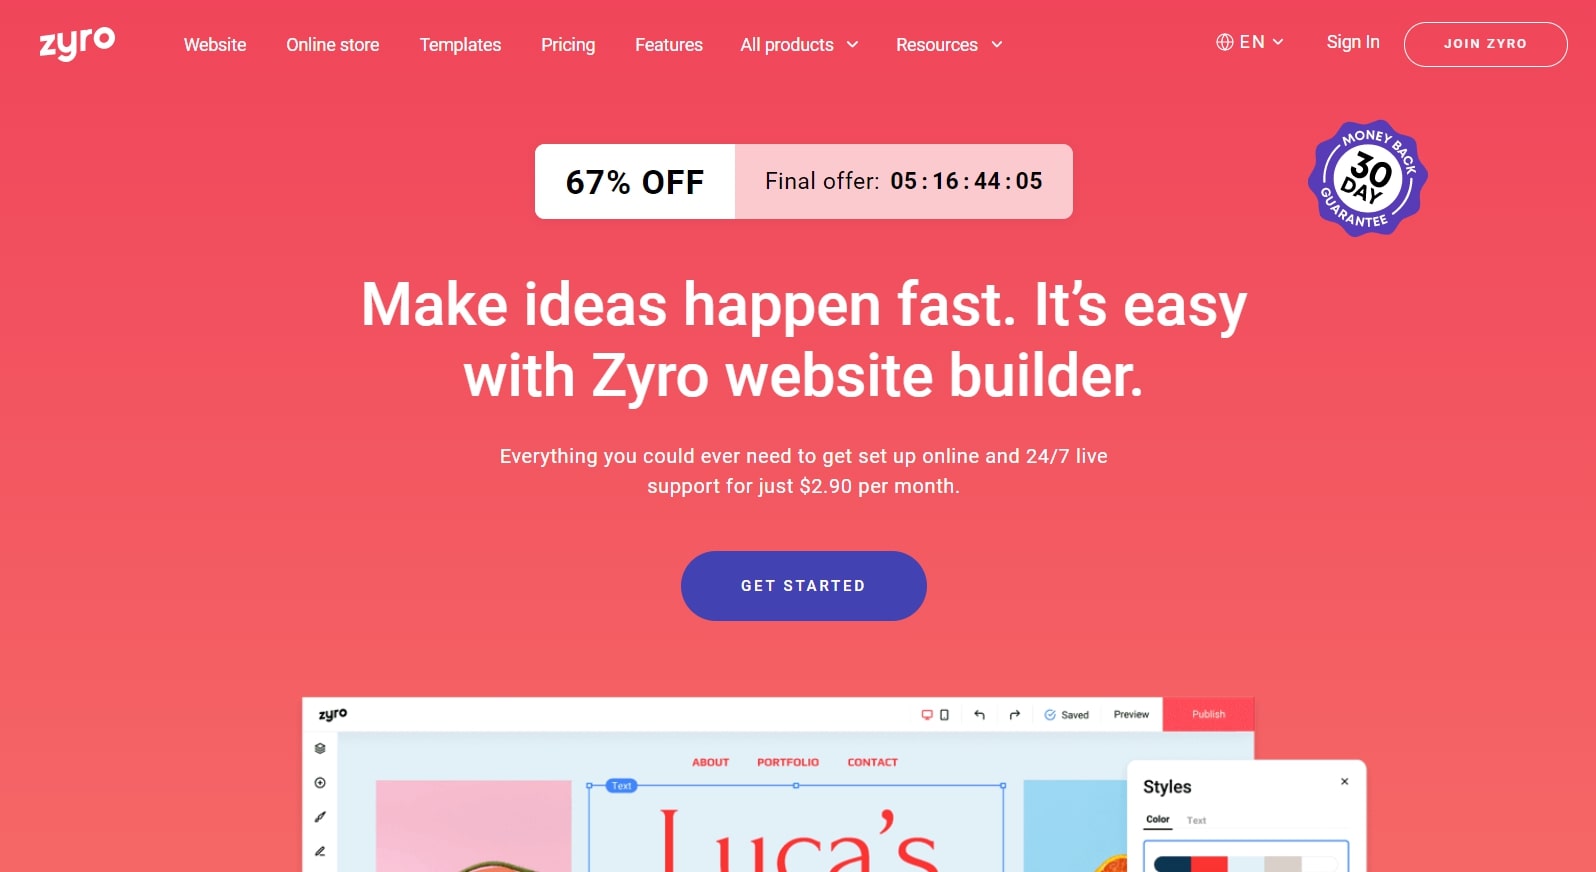 Zyro's homepage